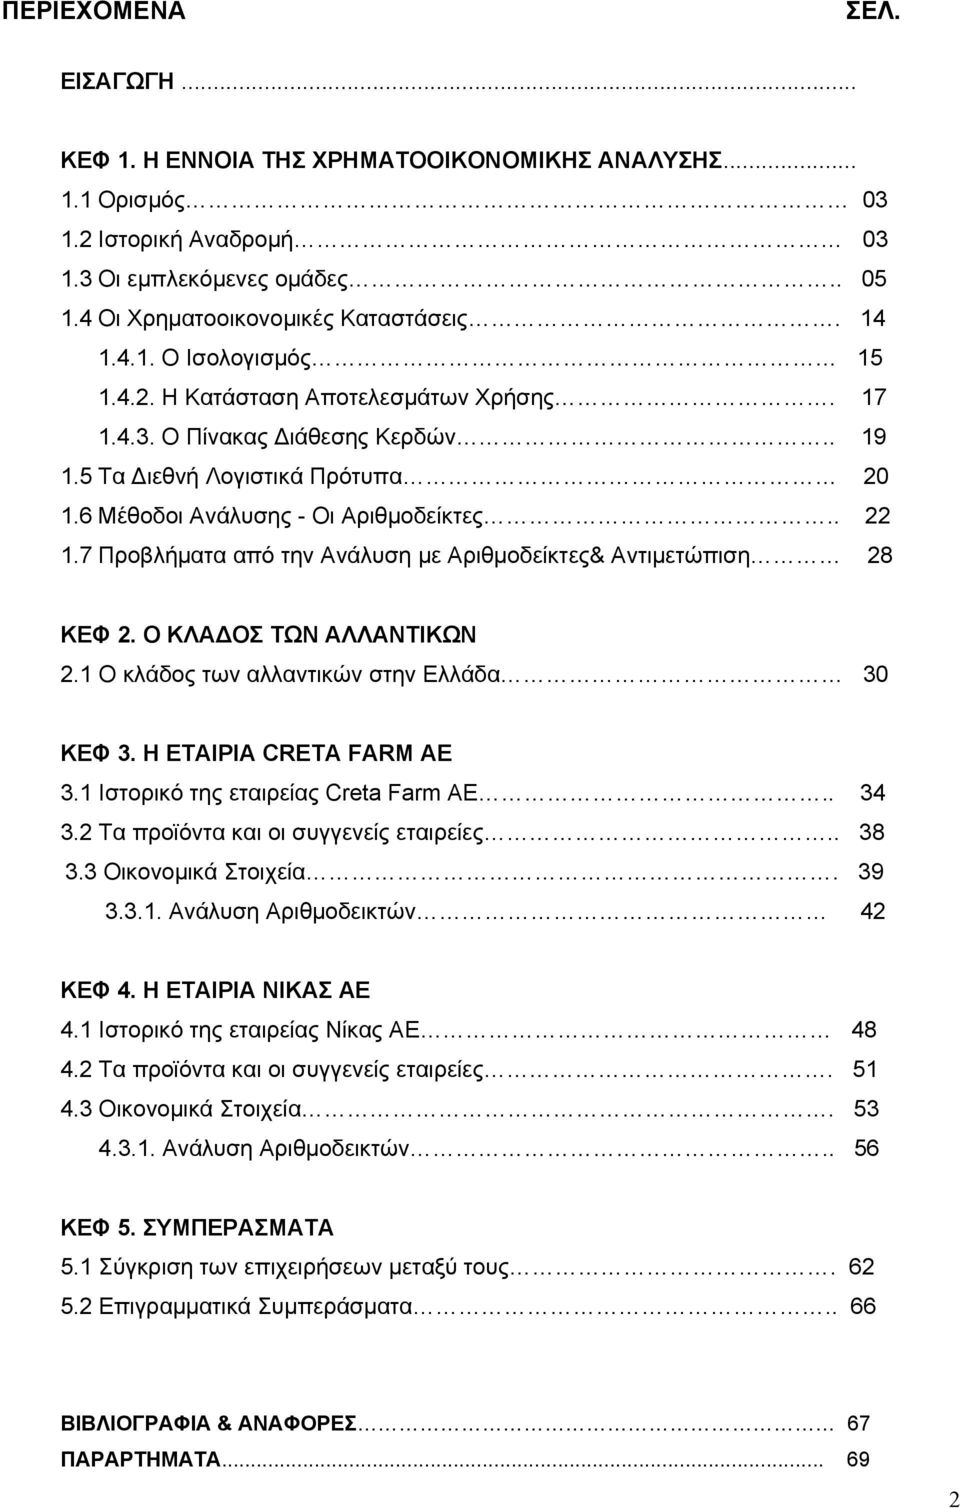 7 Προβλήματα από την Ανάλυση με Αριθμοδείκτες& Αντιμετώπιση 28 ΚΕΦ 2. O ΚΛΑ ΟΣ ΤΩΝ ΑΛΛΑΝΤΙΚΩΝ 2.1 Ο κλάδος των αλλαντικών στην Ελλάδα 30 ΚΕΦ 3. Η ΕΤΑΙΡΙΑ CRETA FARM AE 3.